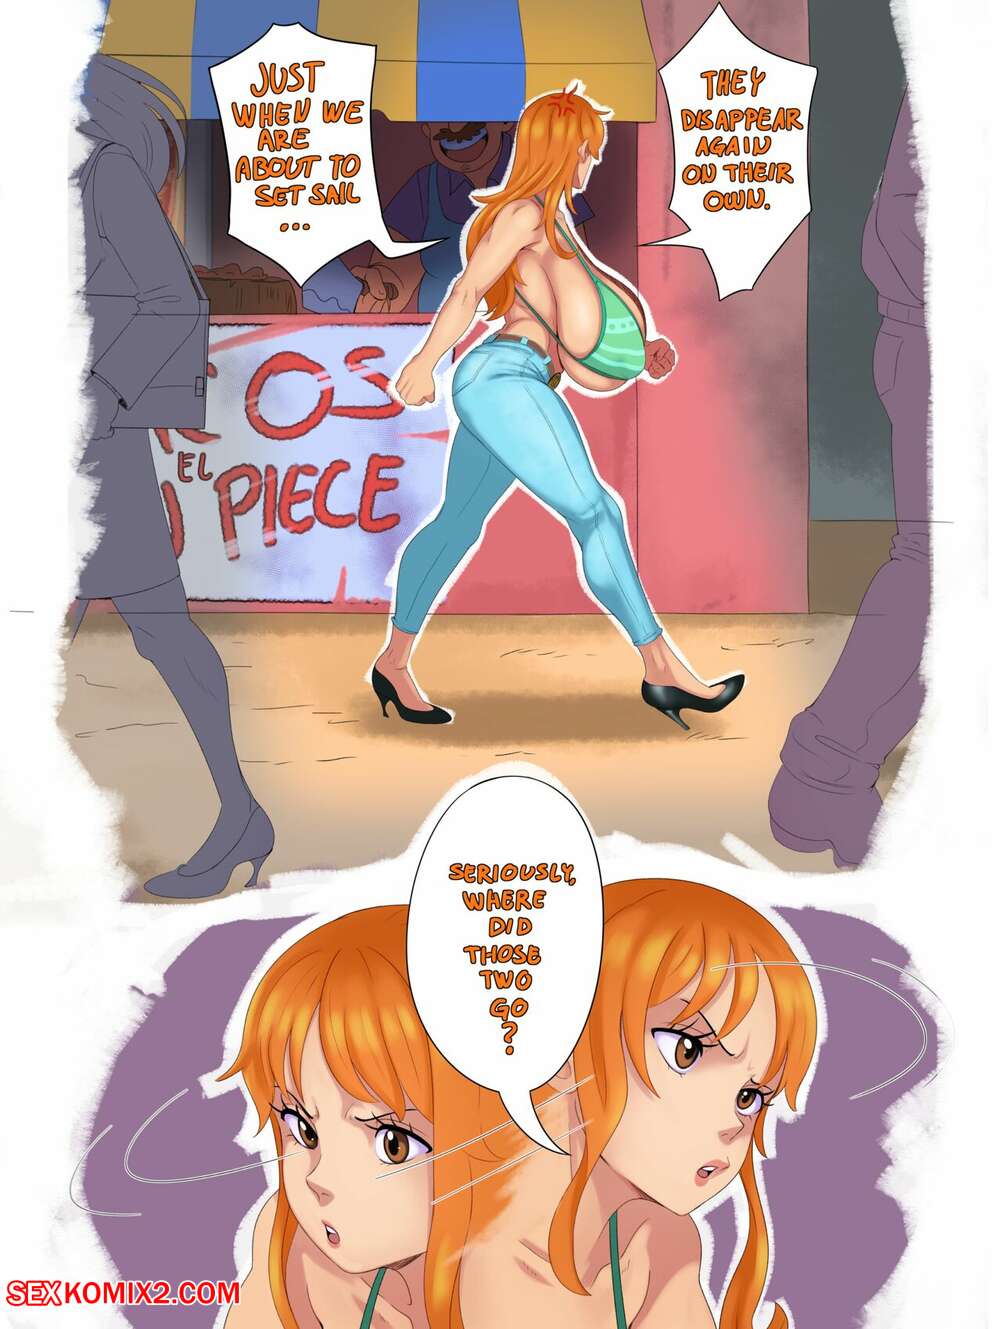 1001px x 1329px - âœ…ï¸ Porn comic One Piece Comic. SunnySunDown. Sex comic hot redhead beauty |  Porn comics in English for adults only | sexkomix2.com